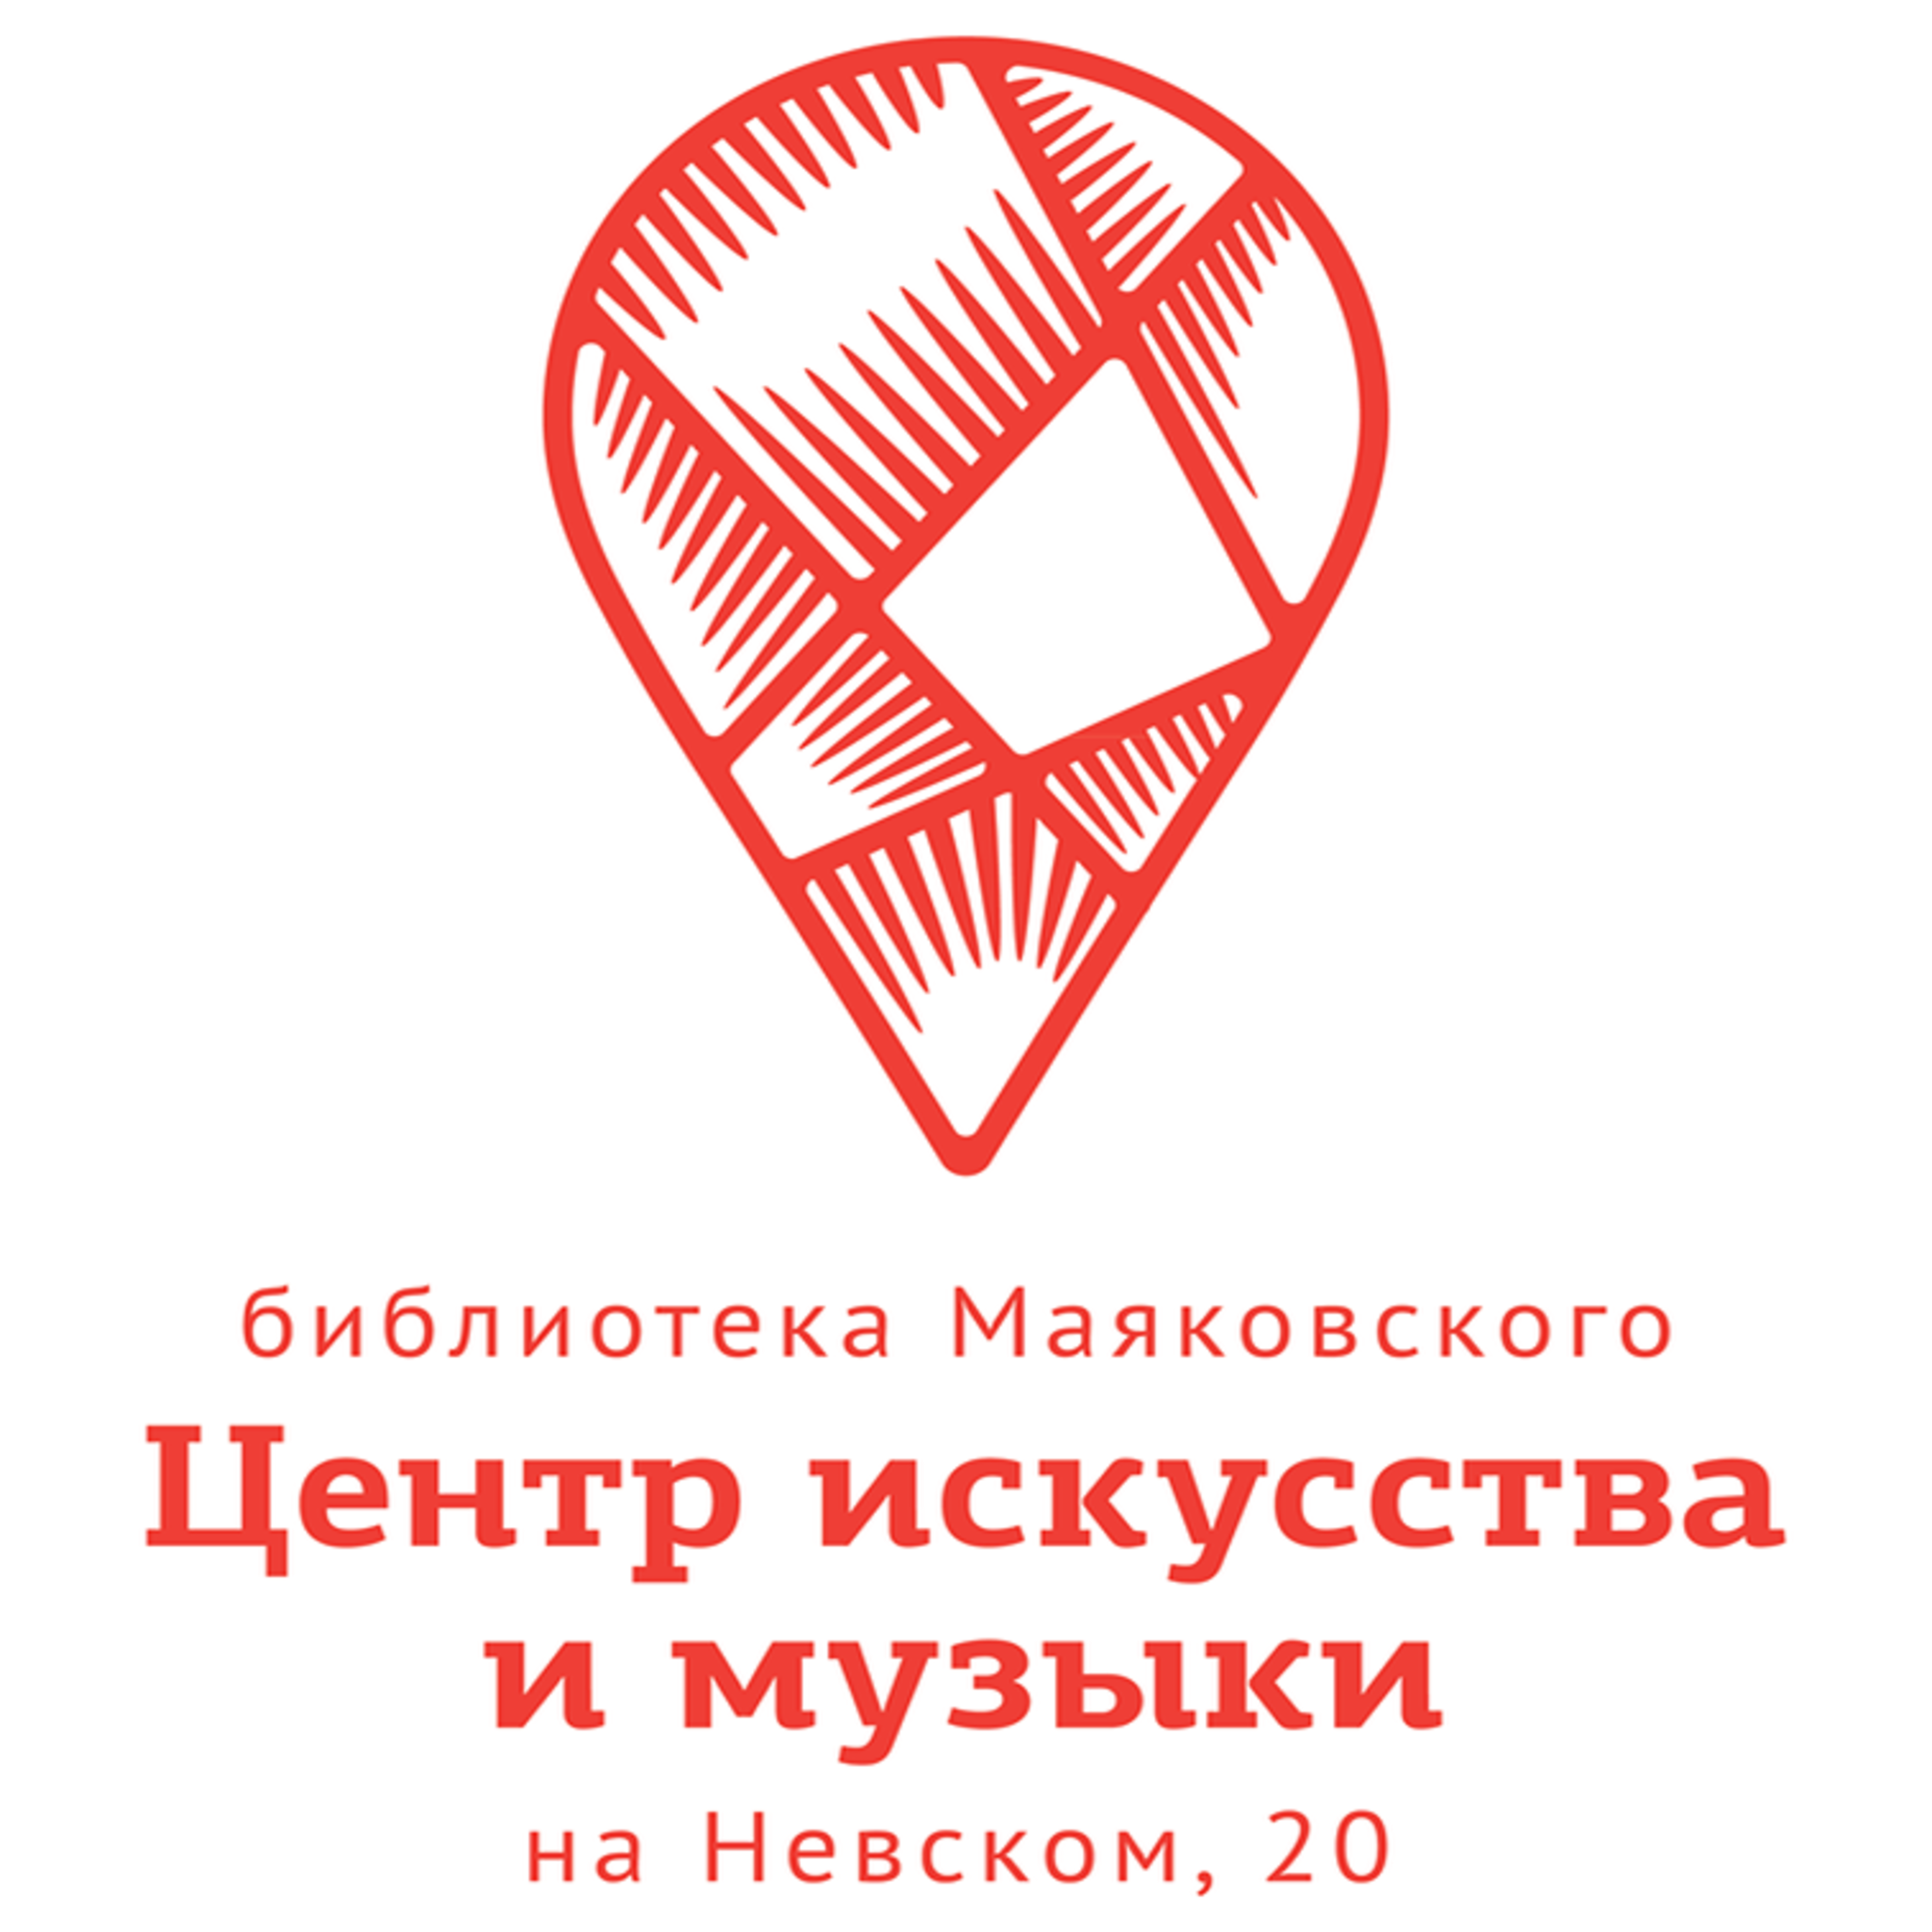 Центр искусства и музыки библиотеки Маяковского